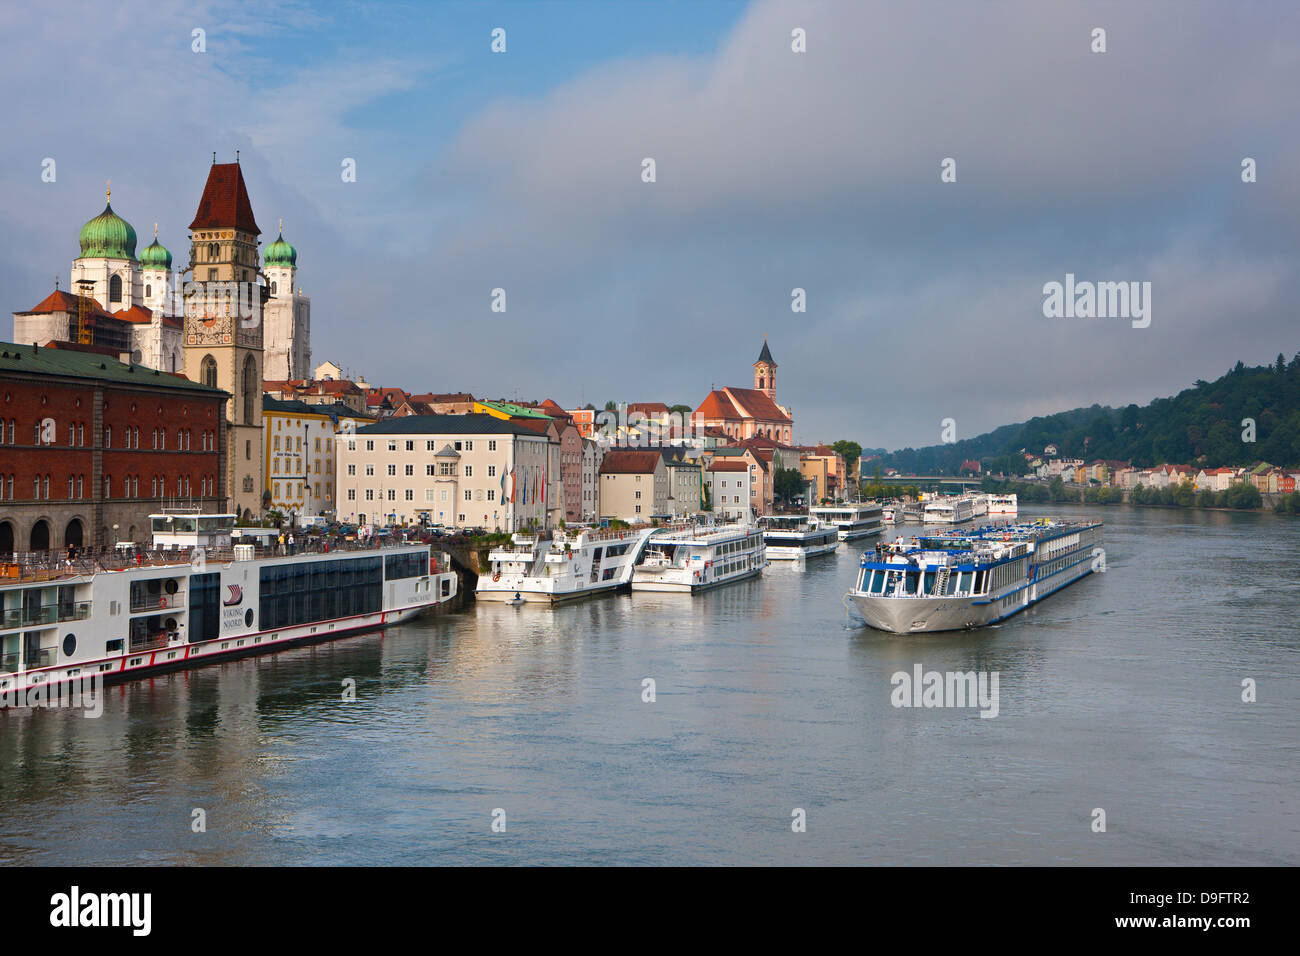 Passage des bateaux de croisière sur le Danube, Passau, Bavière, Allemagne Banque D'Images